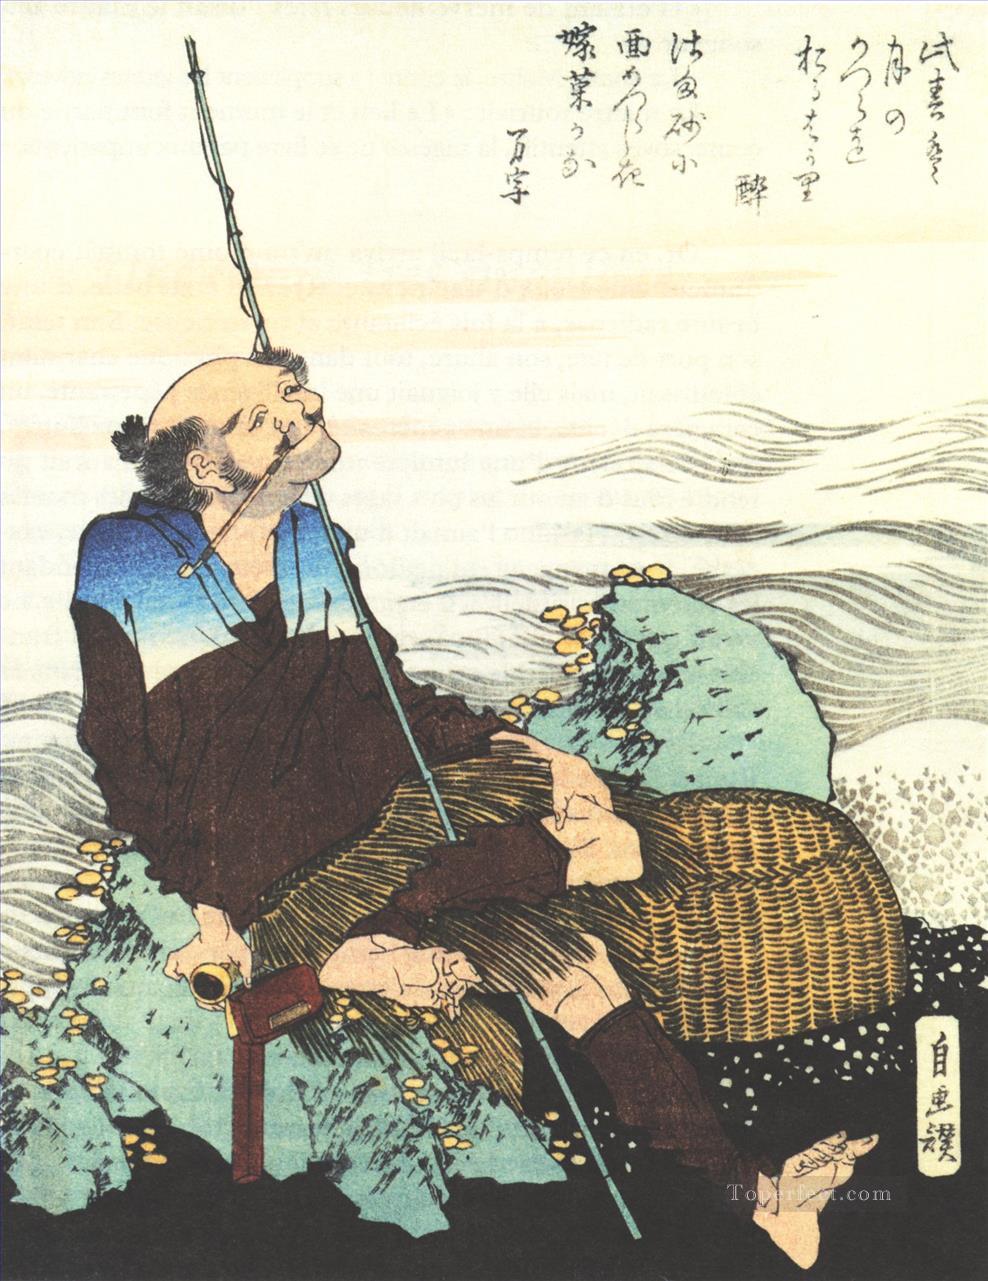 パイプを吸う老漁師 葛飾北斎 浮世絵油絵